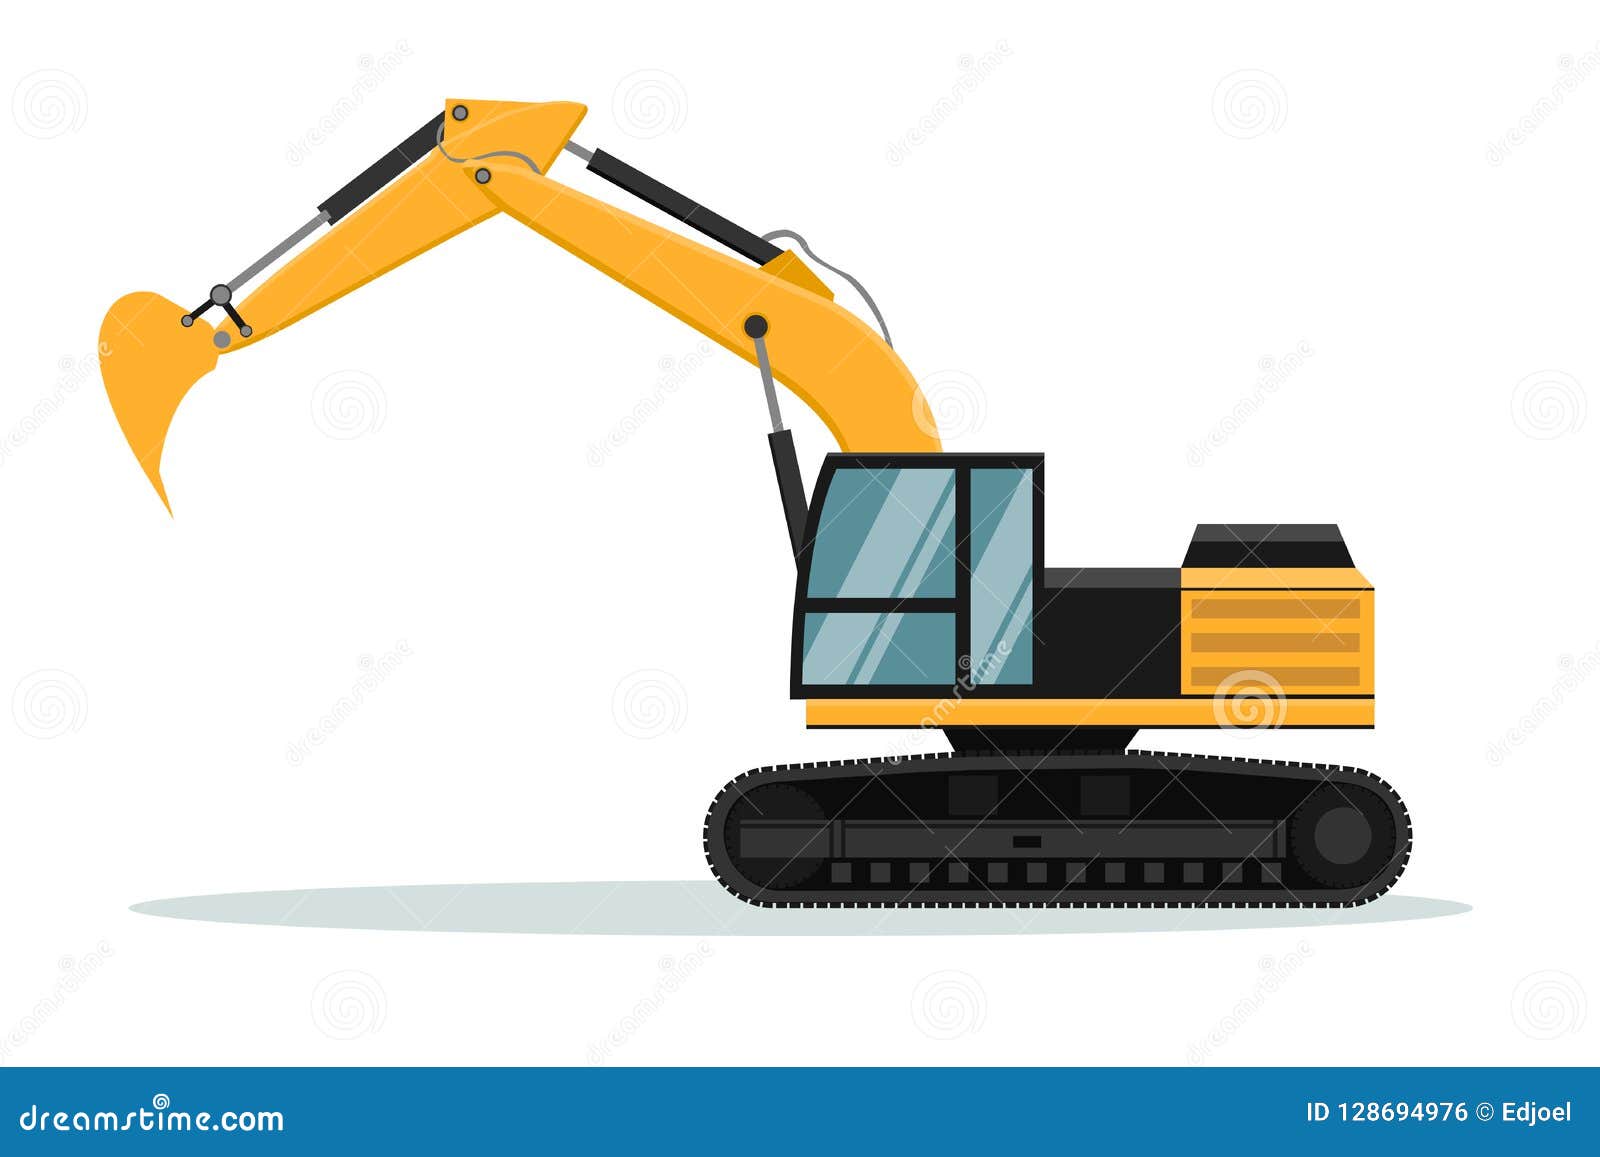 Download Caterpillar Excavator Vector Design. Heavy Machinery ...